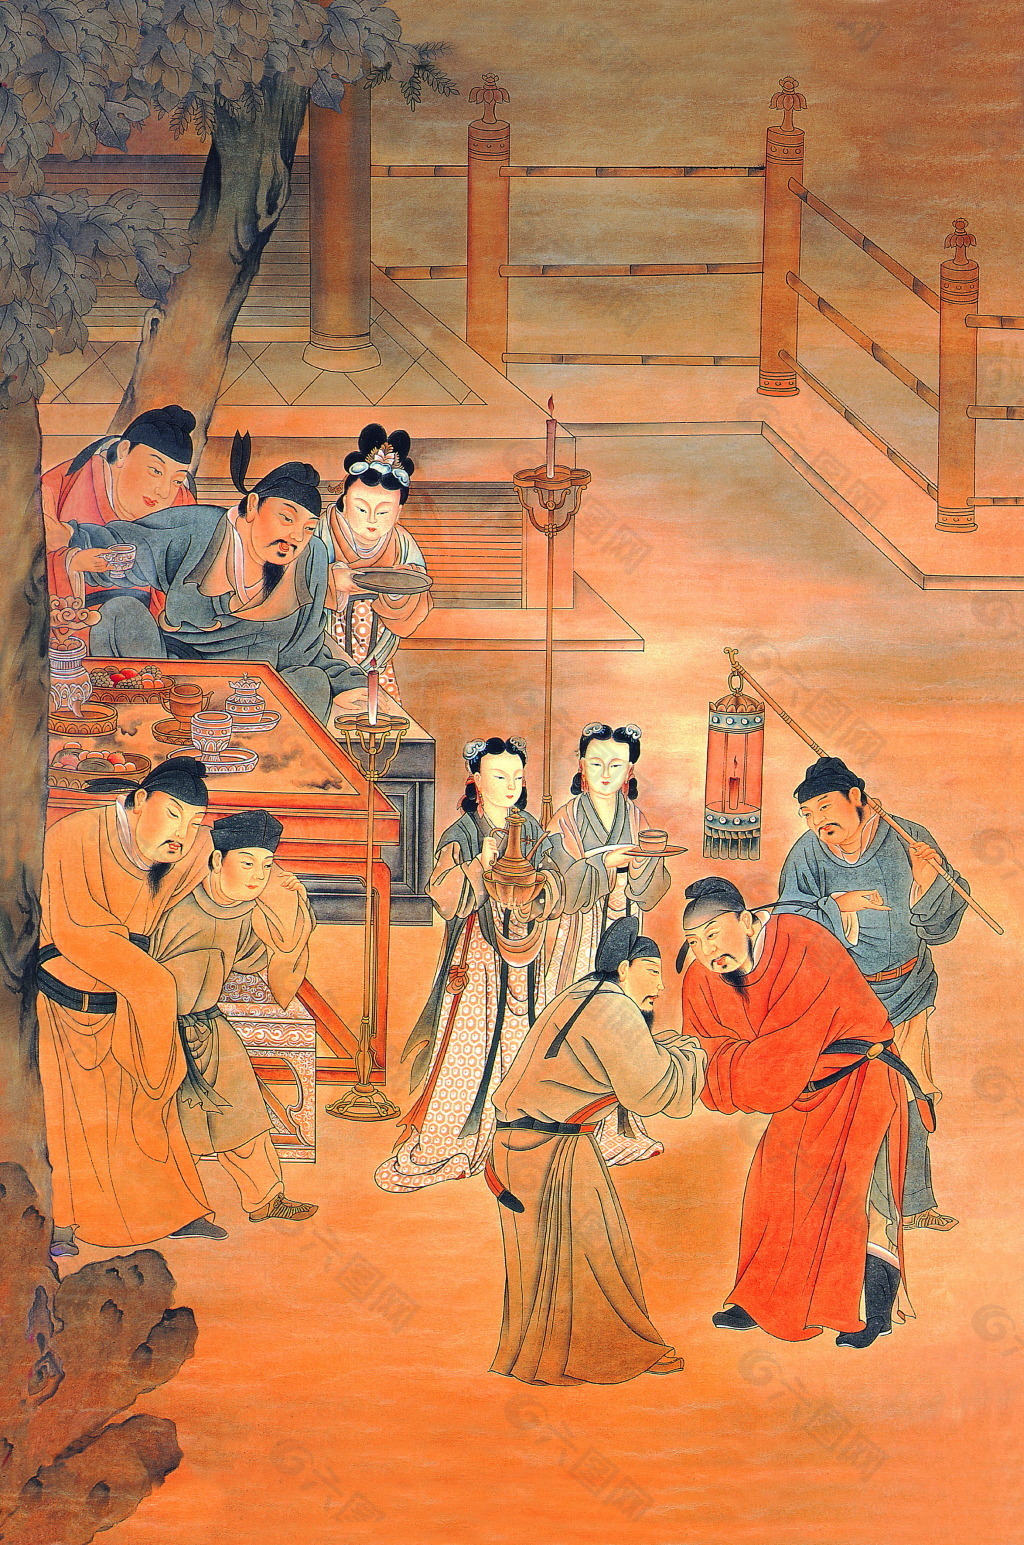 中国古典人物画